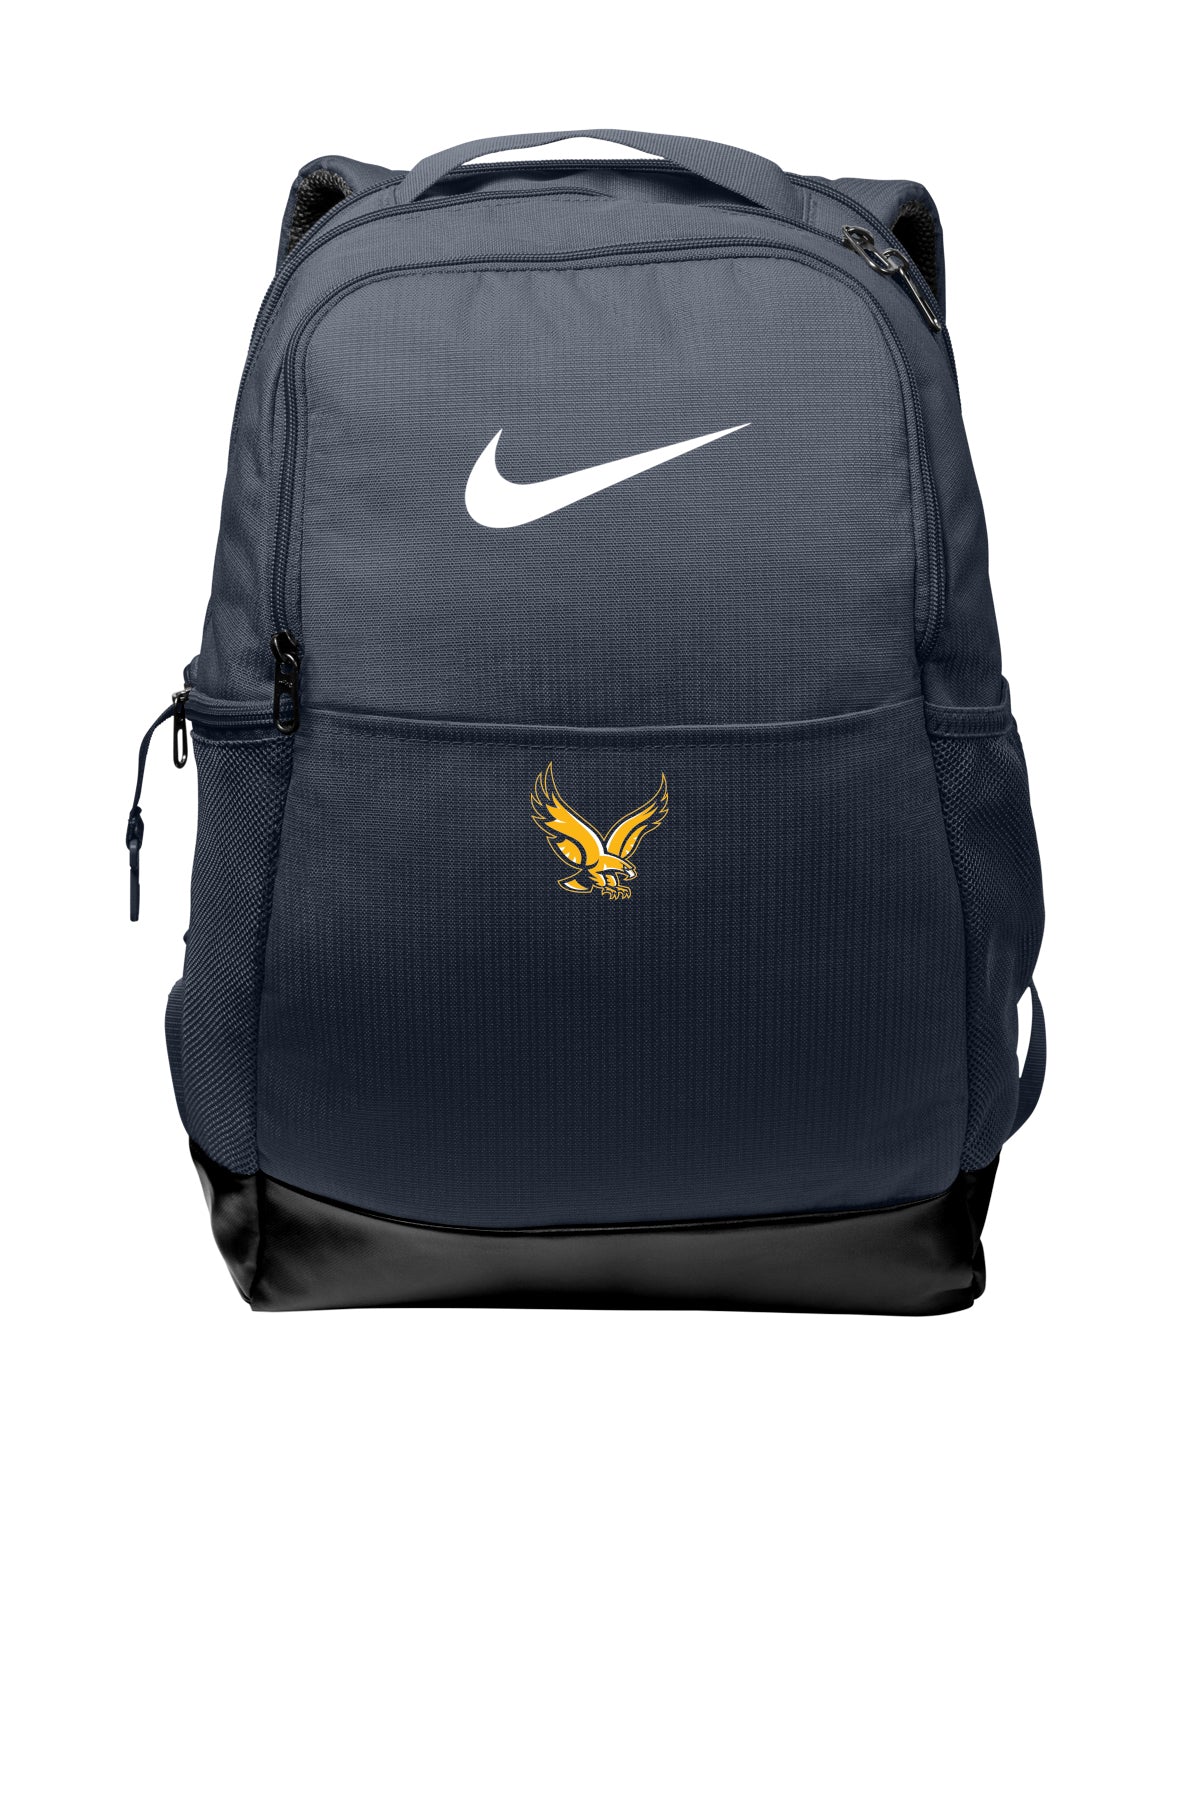 NKDH7709 - SPIRIT - Nike Brasilia Medium Backpack